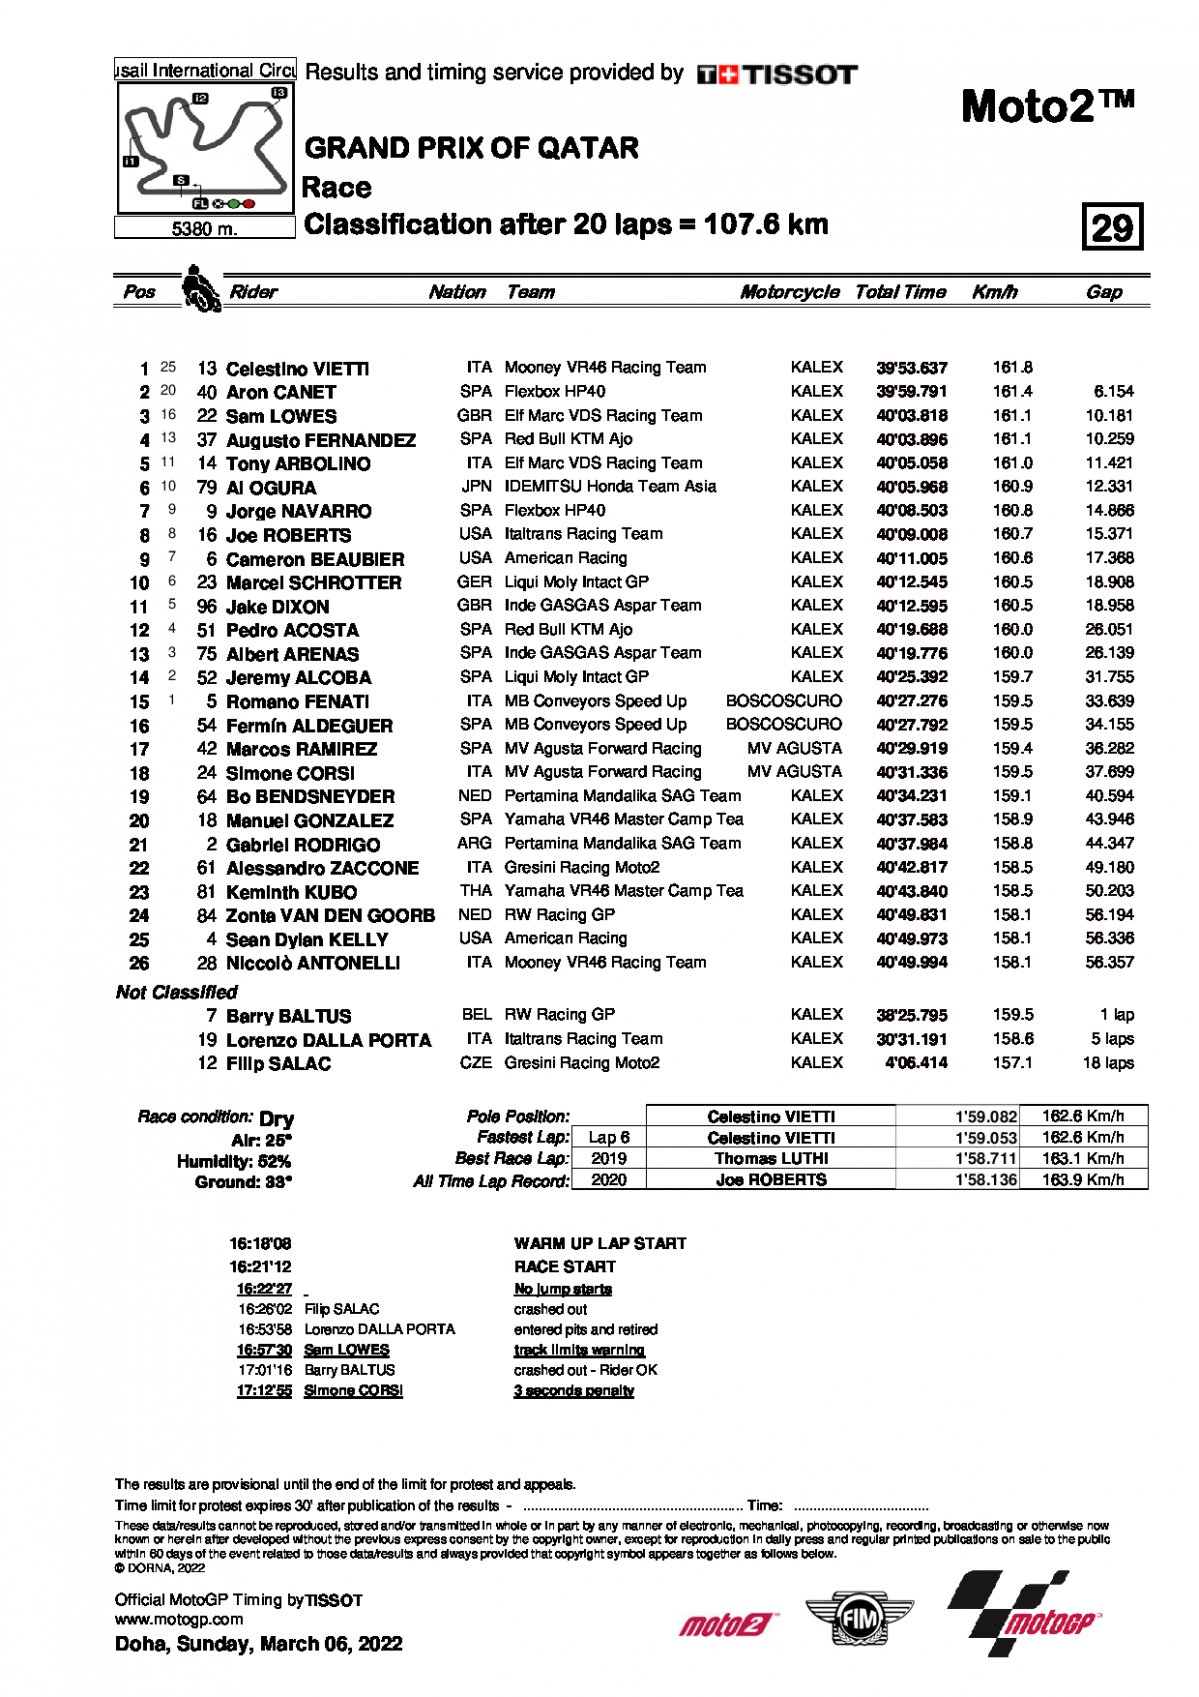 Результаты Гран-При Катара, Moto2 (6/03/2022)